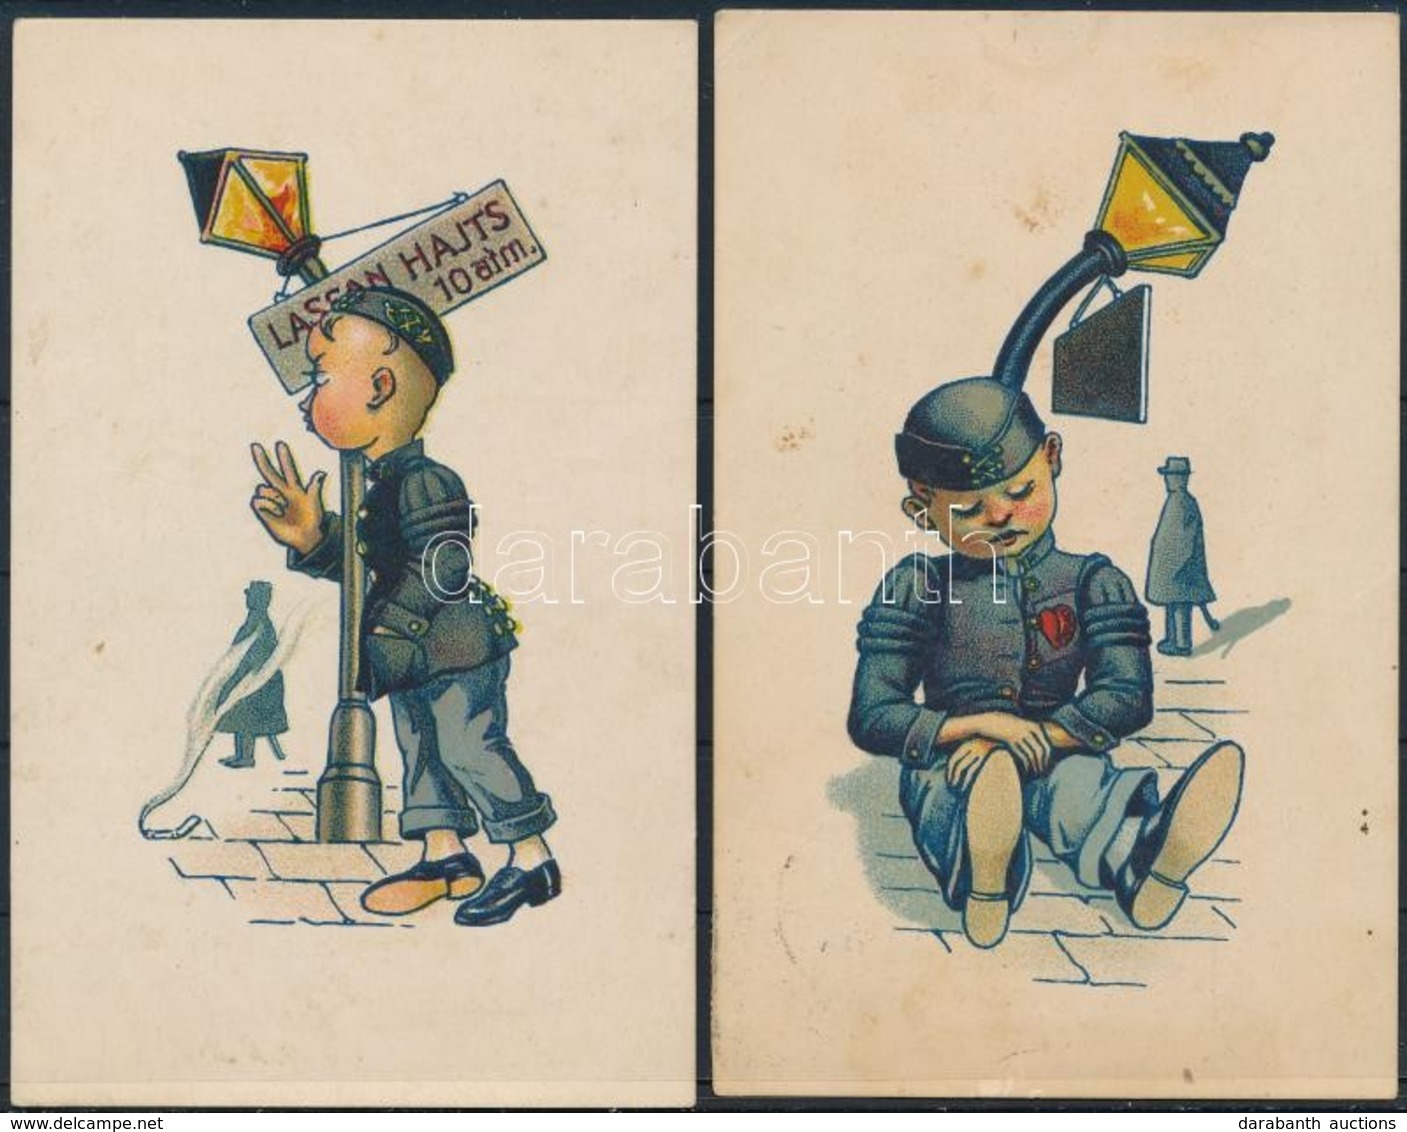 ** 2 Db RÉGI Studentika Művészlap Albumlapon; A Soproni Diákéletből XXV. és XXXII.  / 2 Pre-1945 Studentica Art Postcard - Unclassified